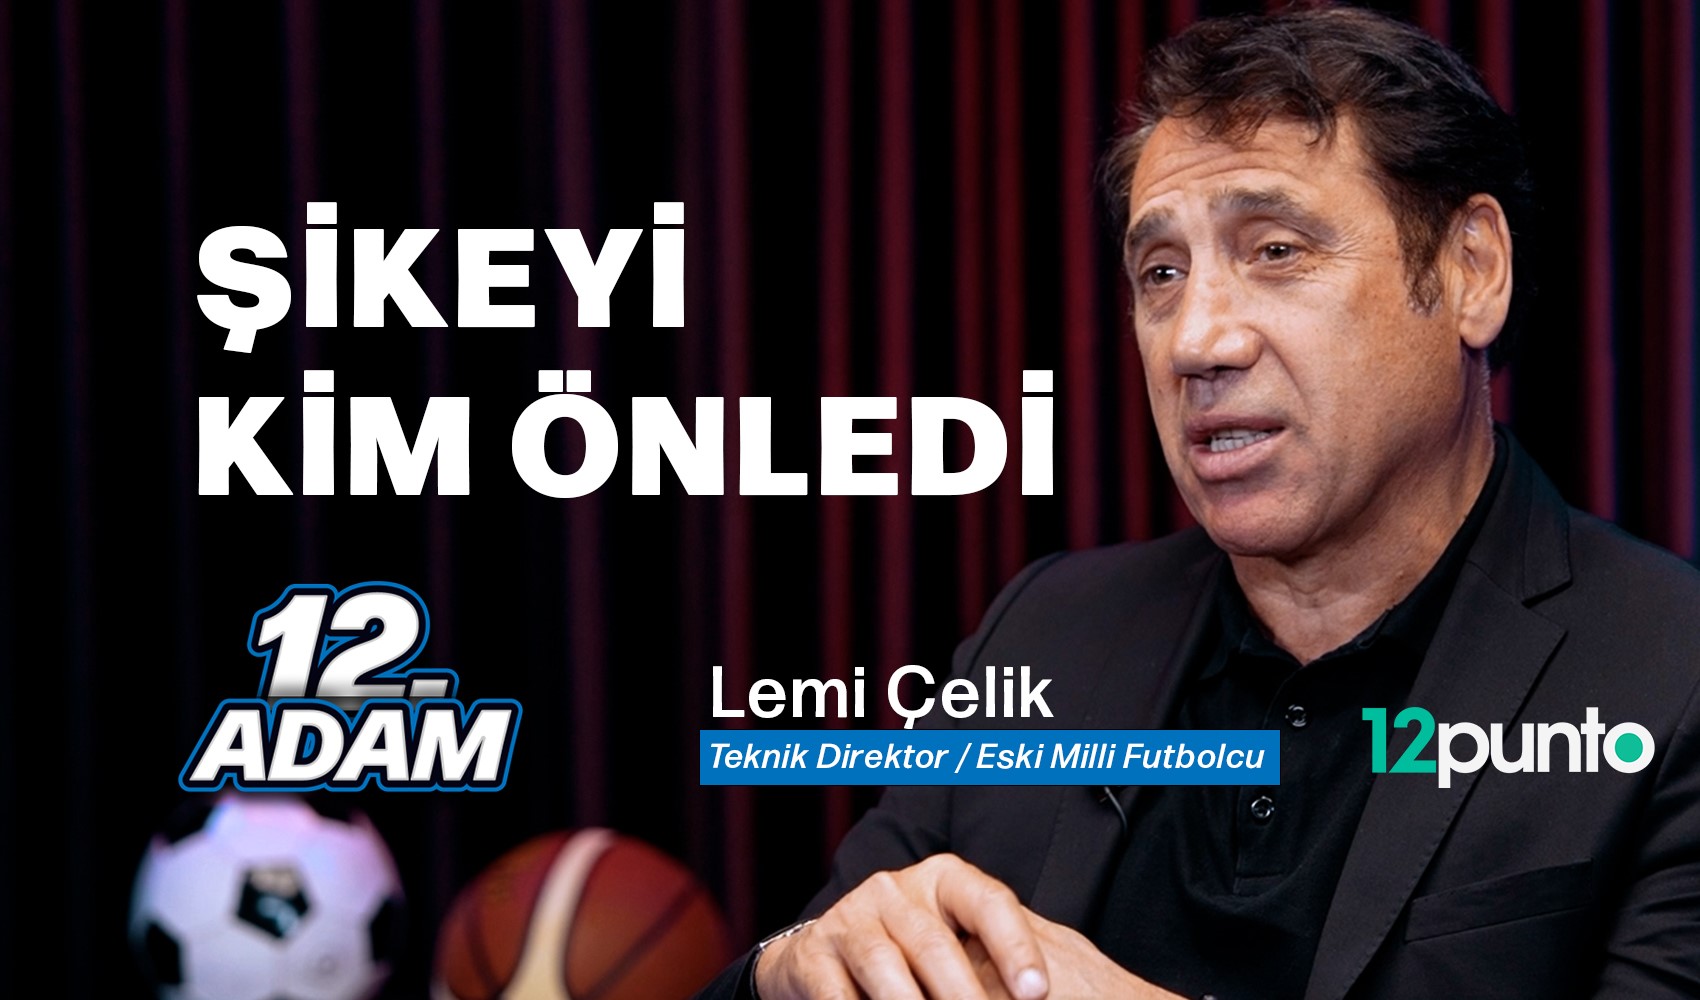 Trabzonspor'un unutulmaz oyuncularından Lemi Çelik açıkladı: 'Şikeyi kim önledi?